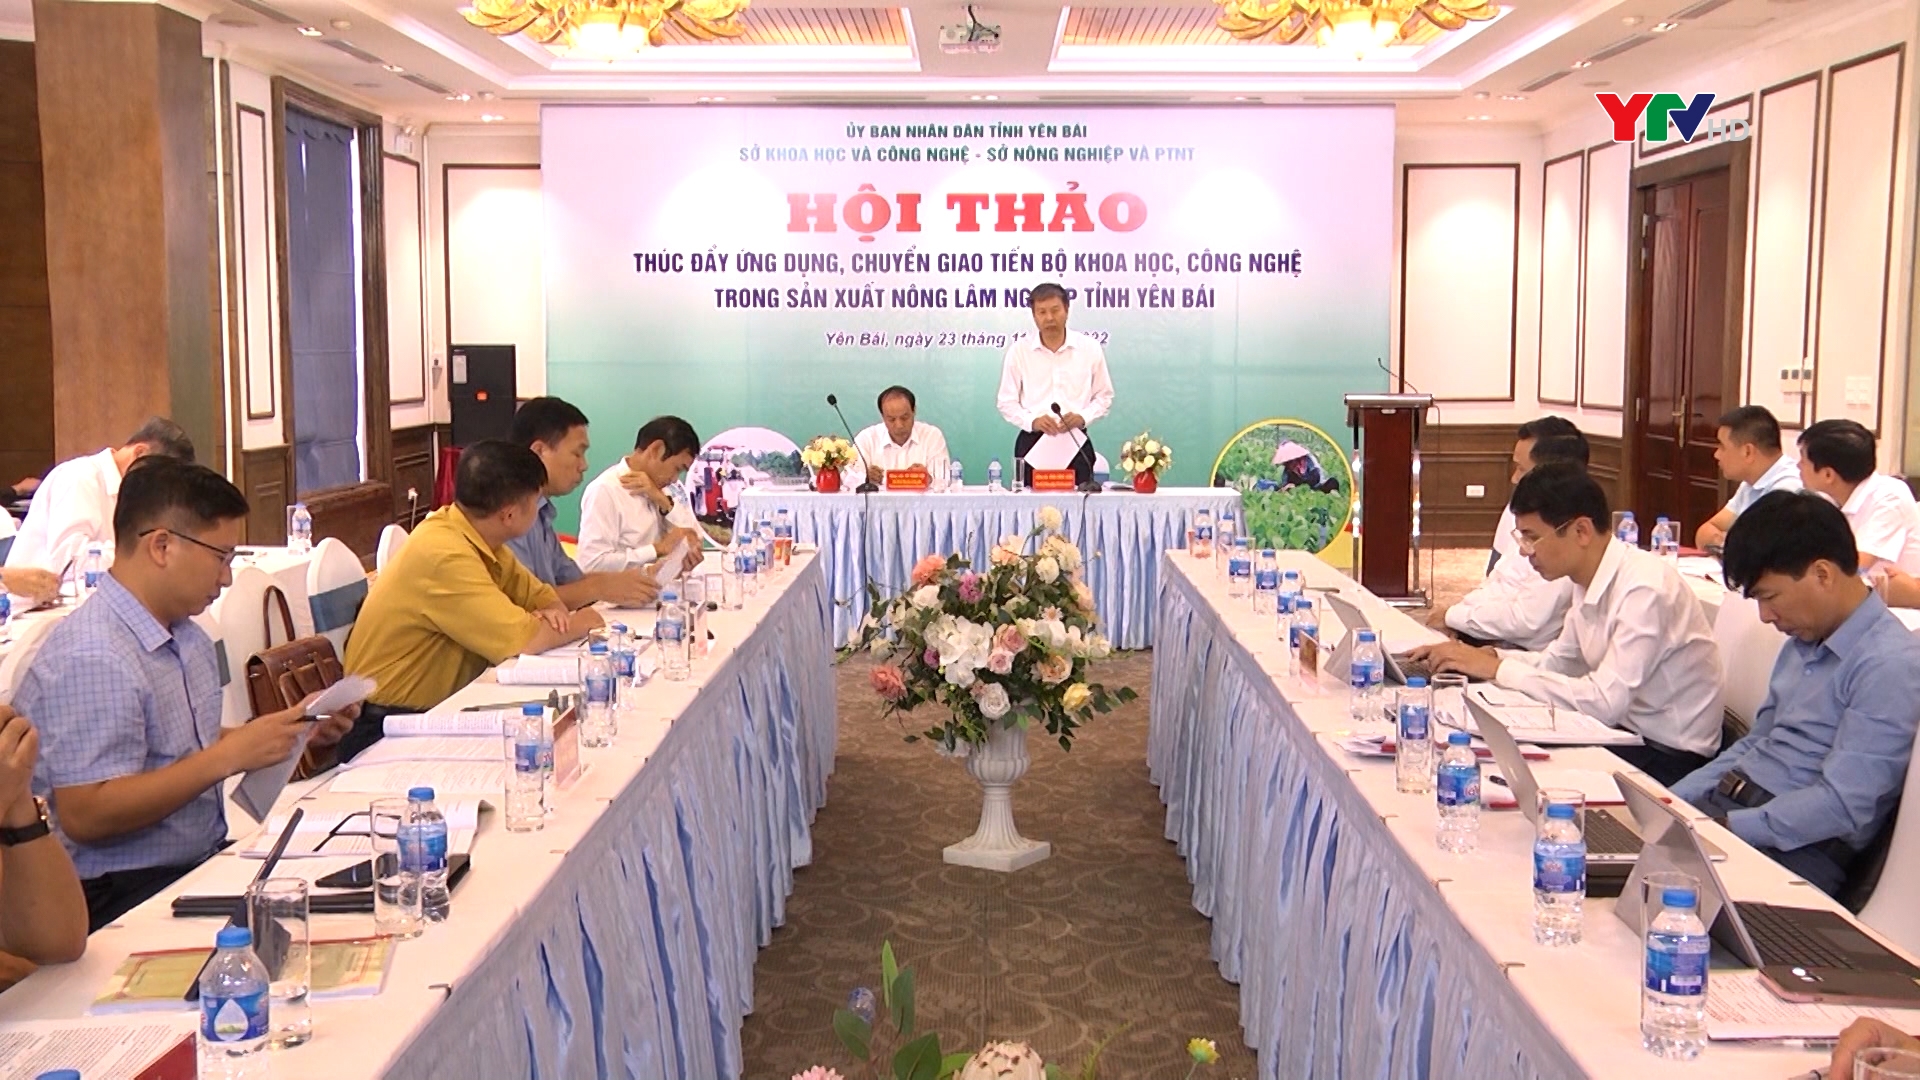 Hội thảo về thúc đẩy ứng dụng, chuyển giao tiến bộ KHCN trong sản xuất nông lâm nghiệp tỉnh Yên Bái